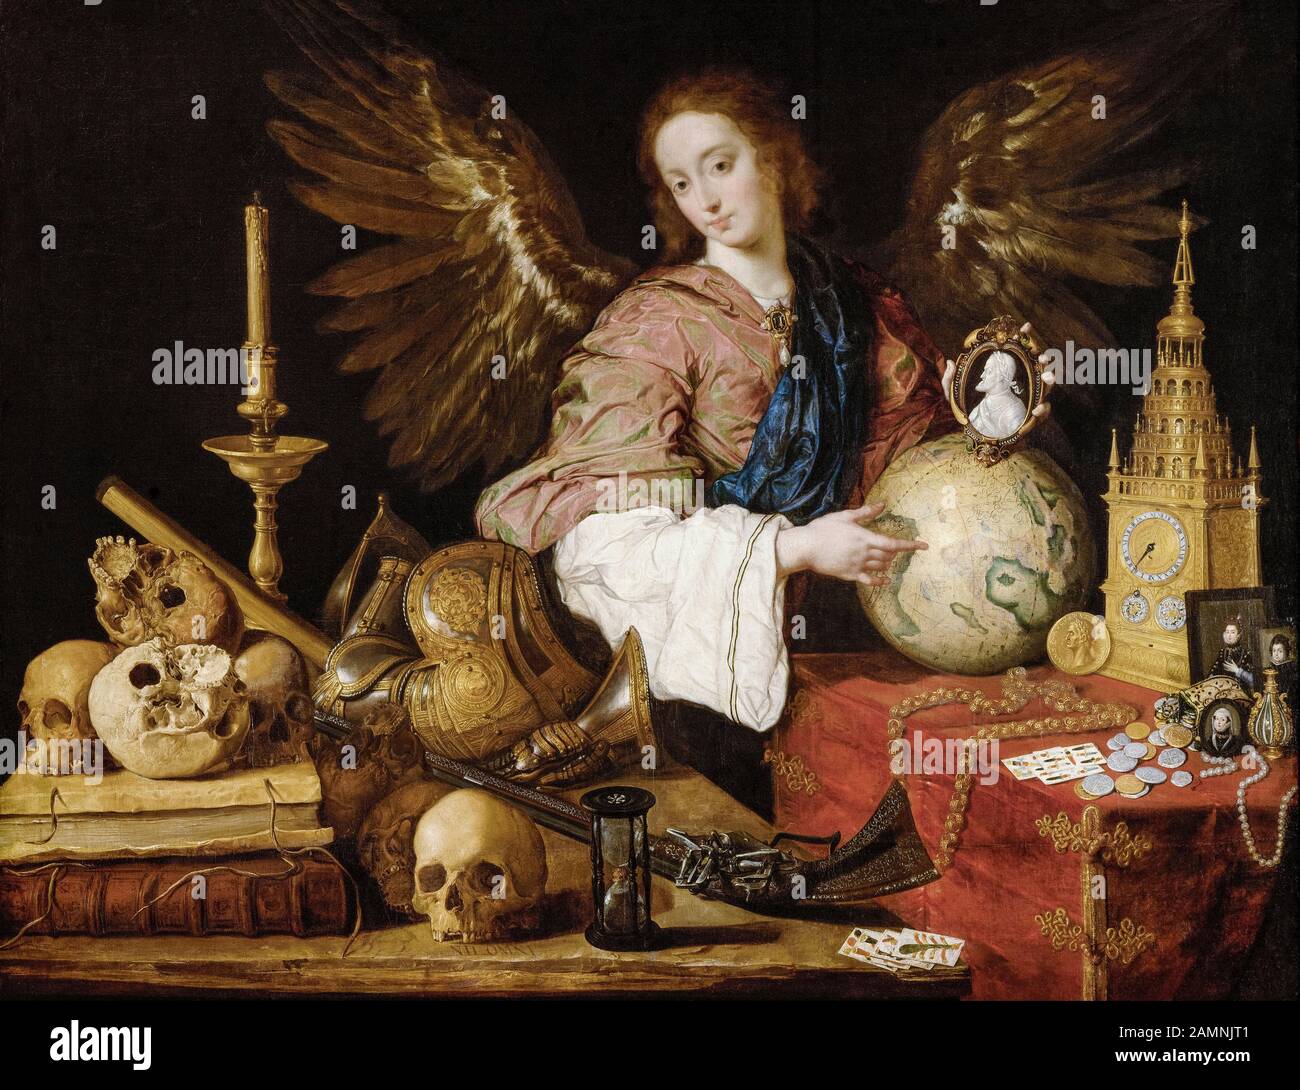 Antonio de Pereda, pittura, Allegoria della vanità, 1632-1636 Foto Stock